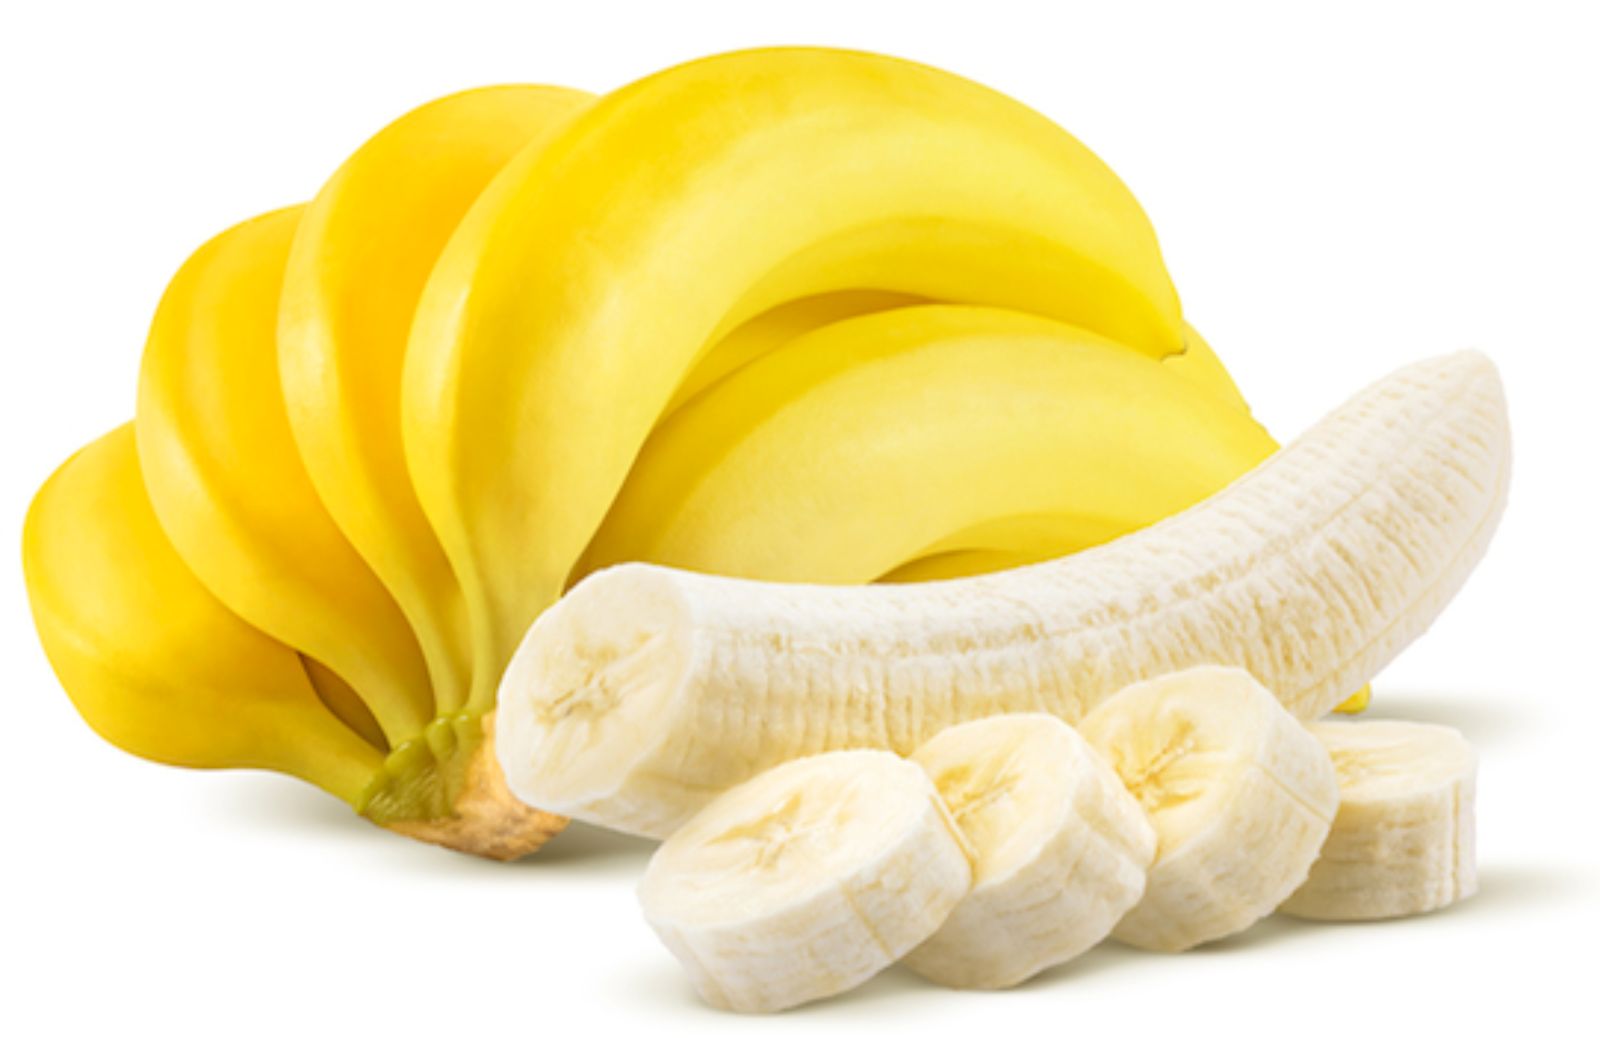 Come utilizzare le banane: in cucina e non solo 